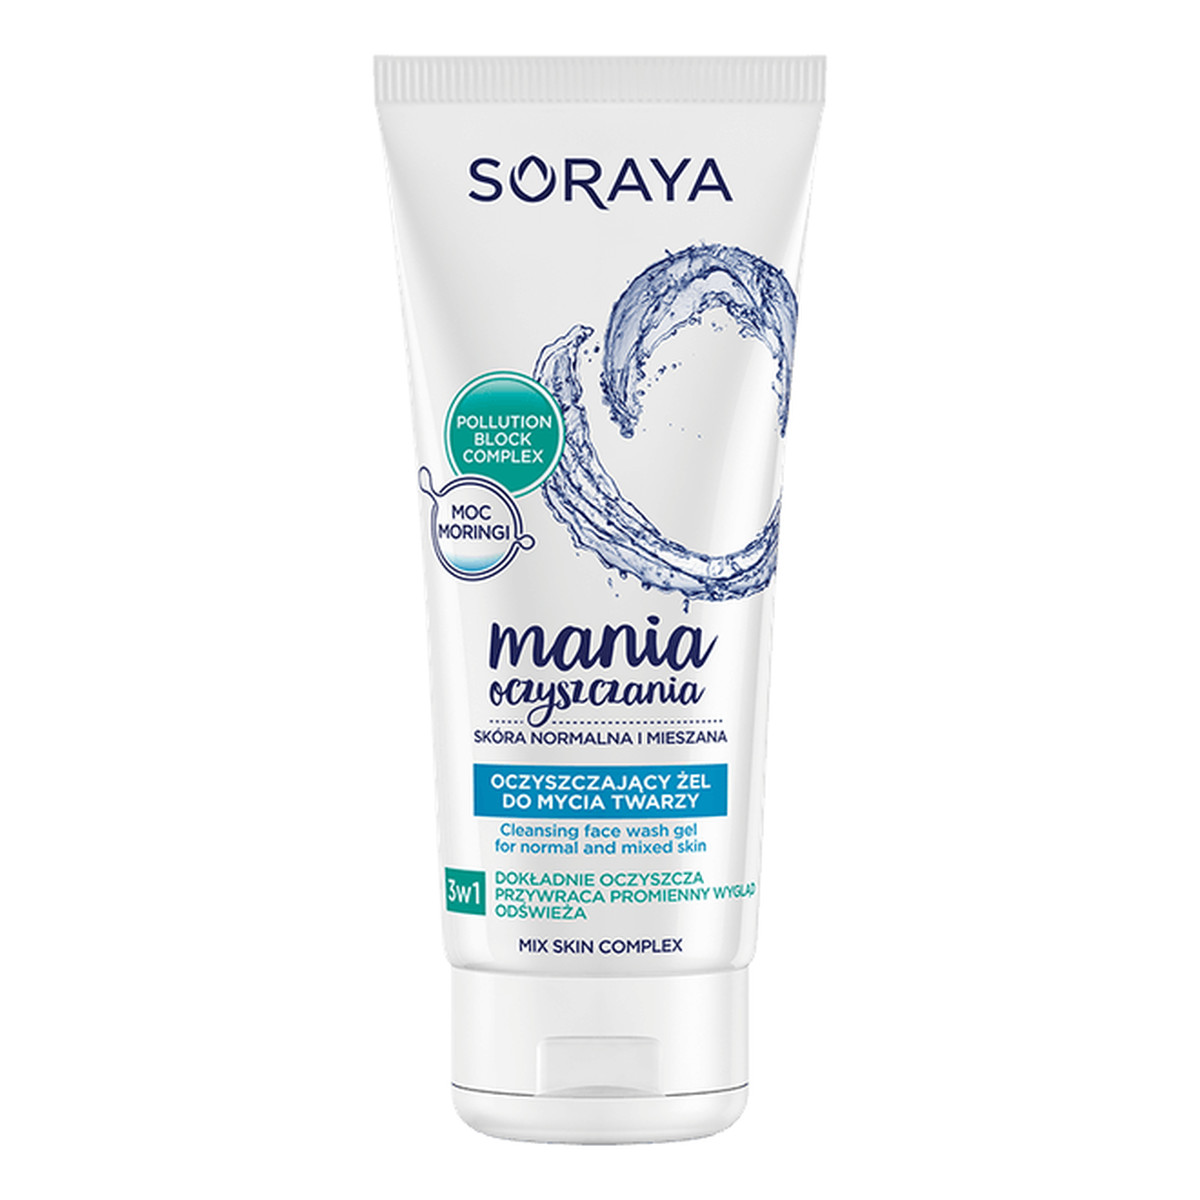 Soraya Mania Oczyszczania żel oczyszczający do mycia twarzy 3w1 150ml